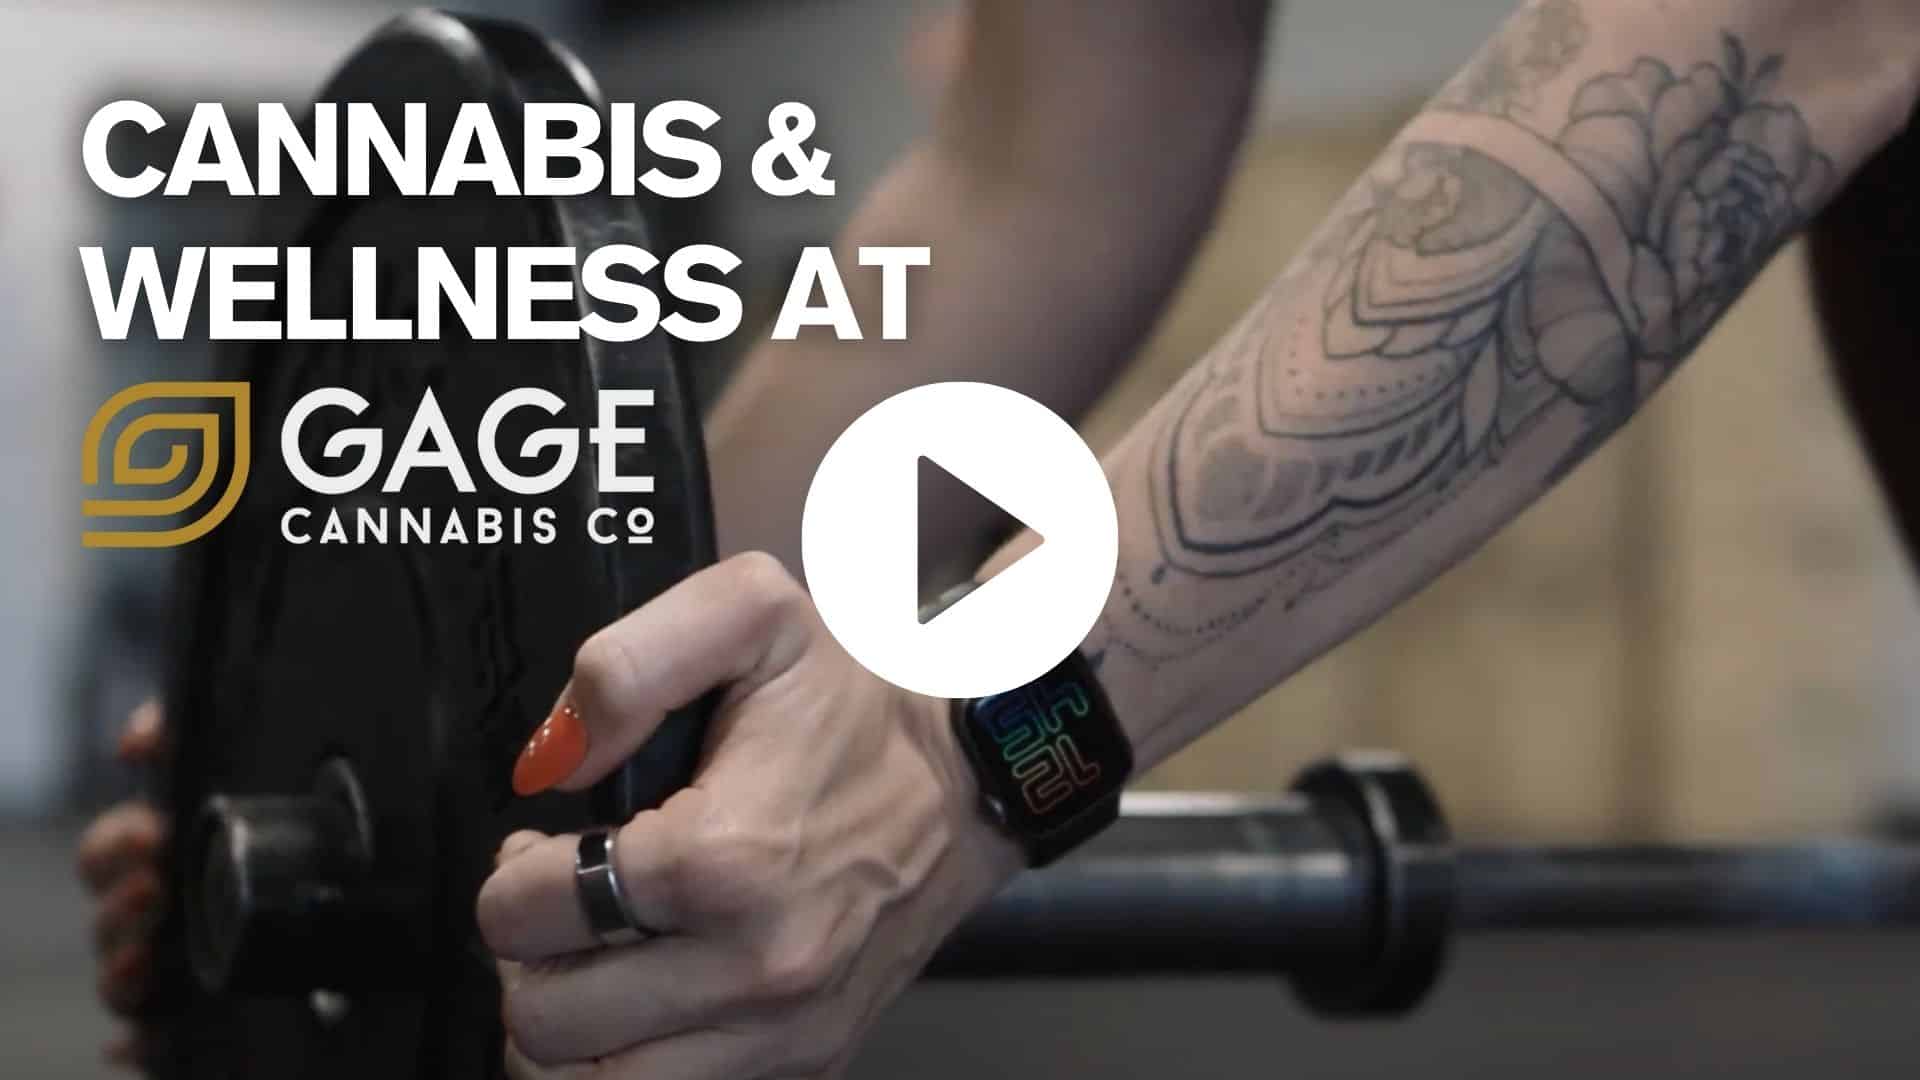 Cannabis & Wellness walk hand in hand at Gage Cannabis Co.